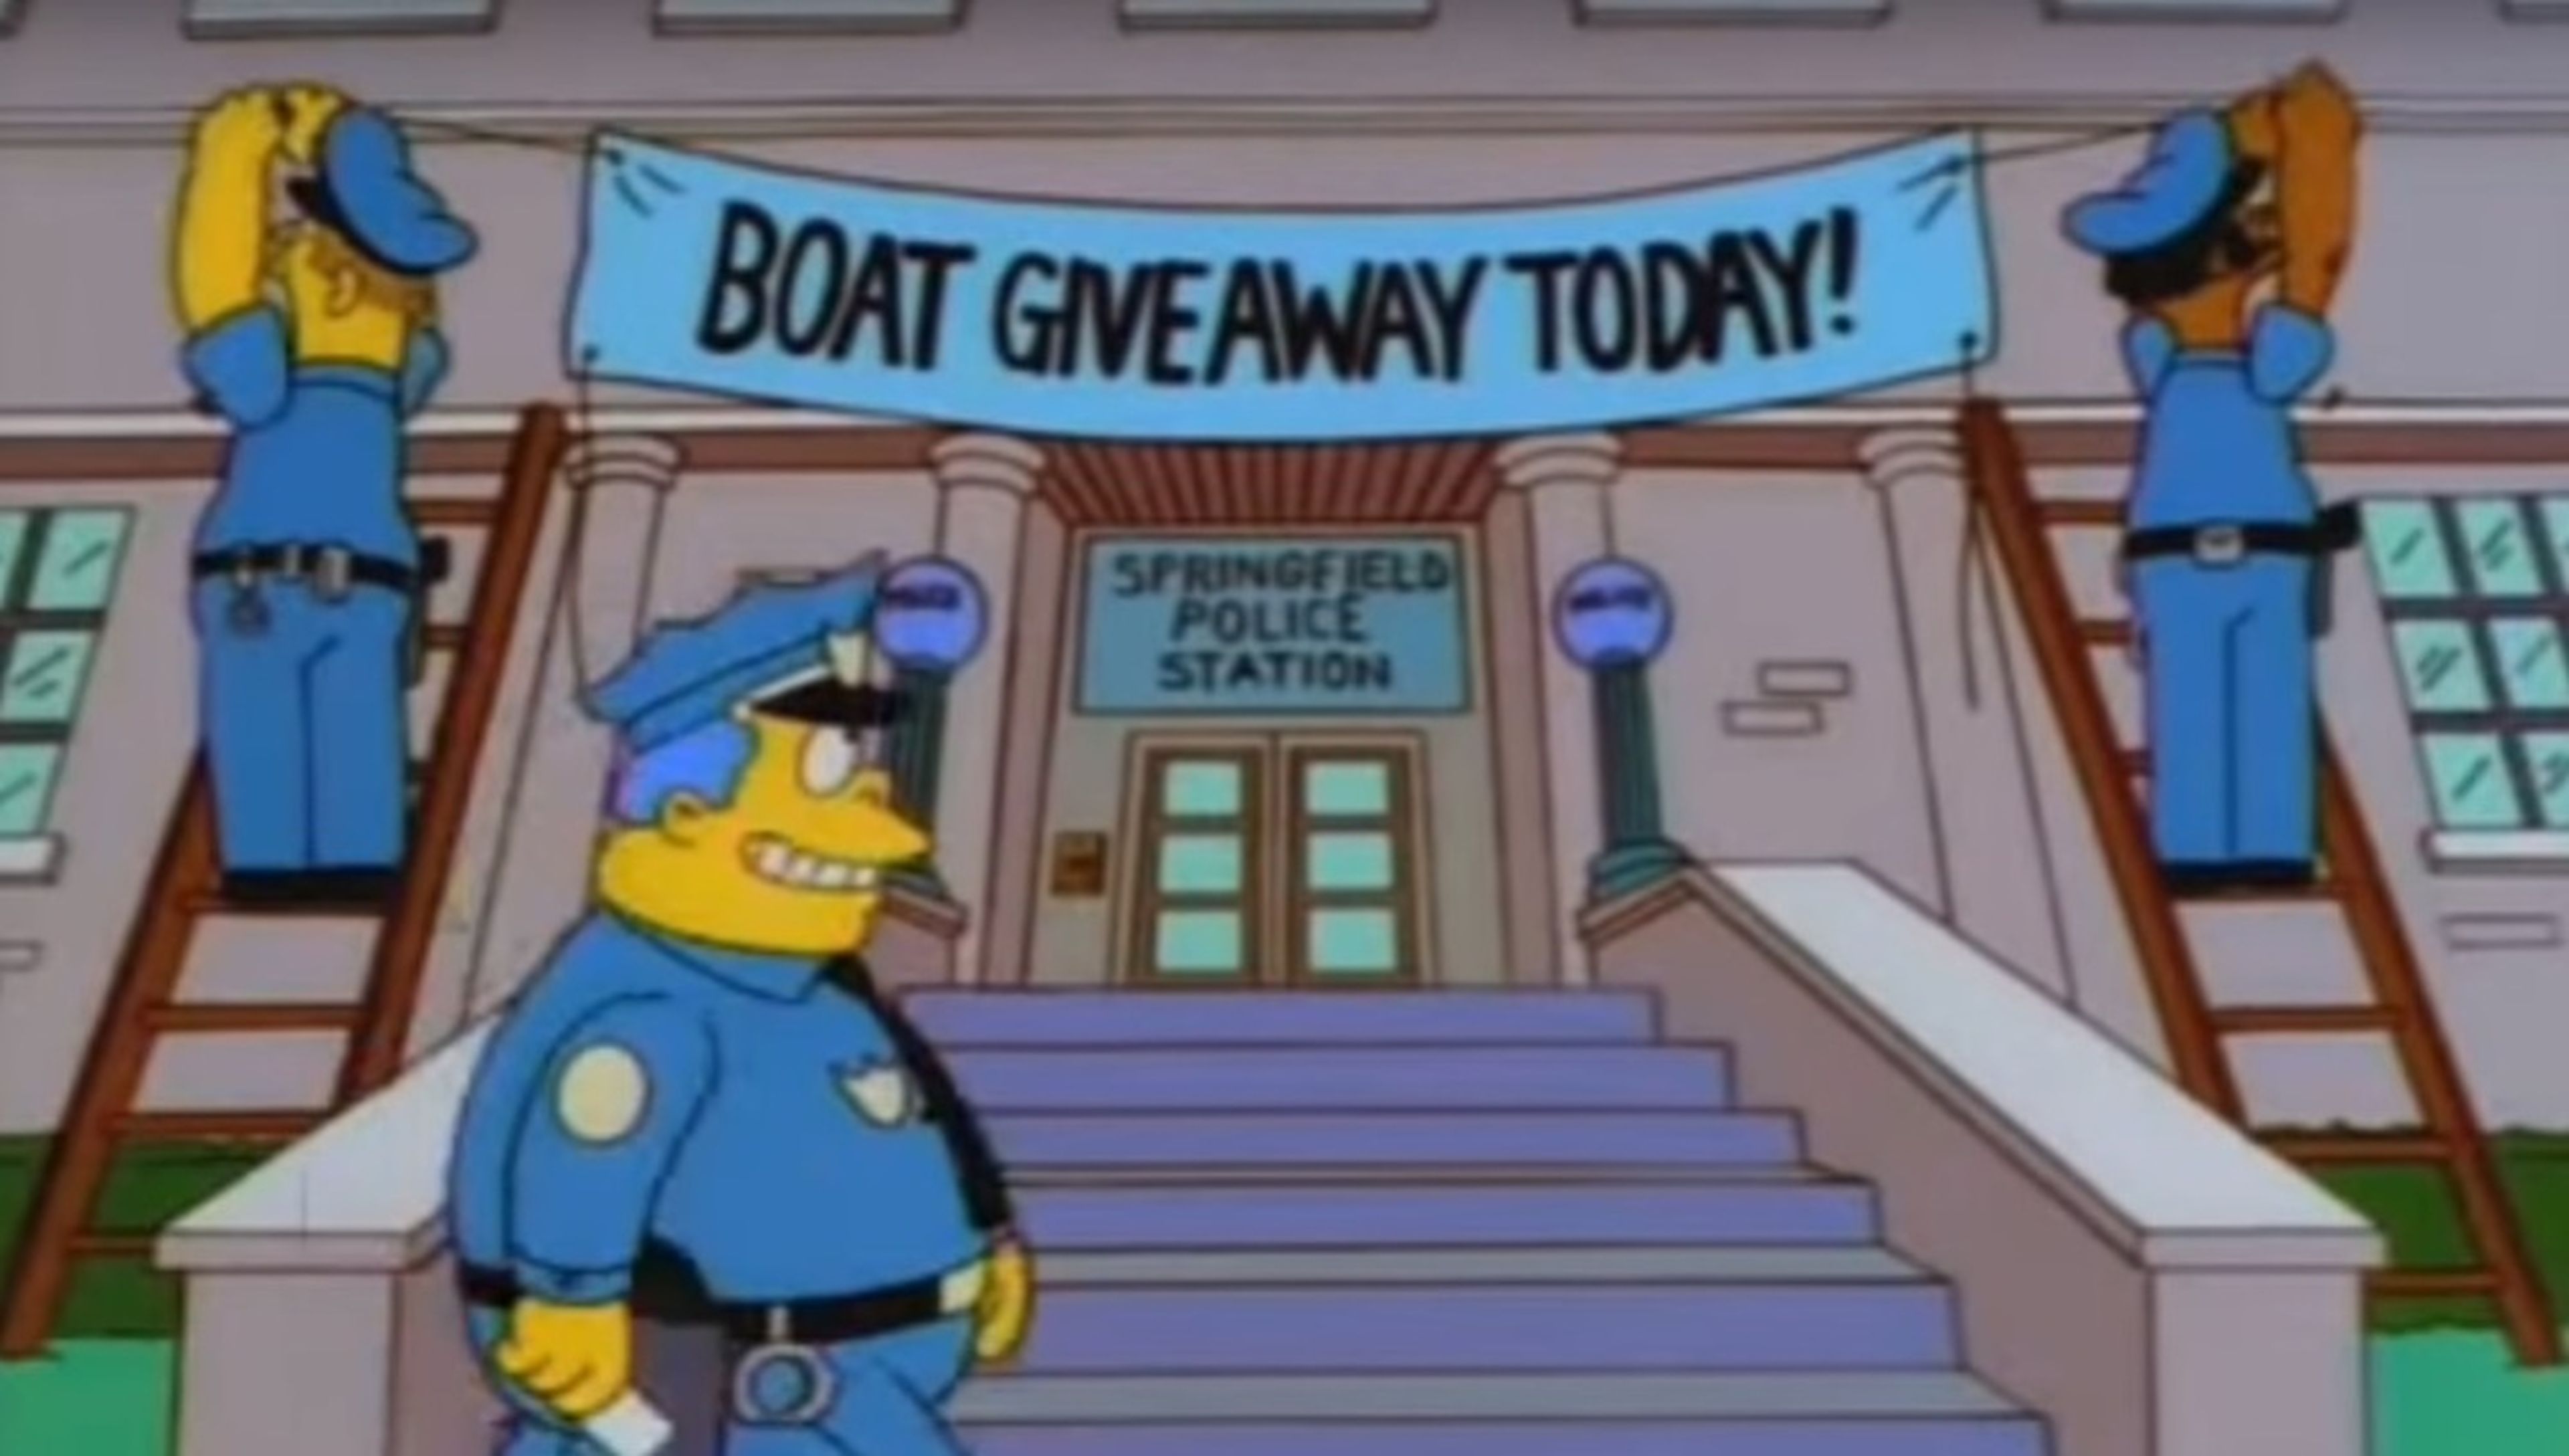 El jefe Wiggum engaña a los delincuentes de Springfield con una lancha motora gratis